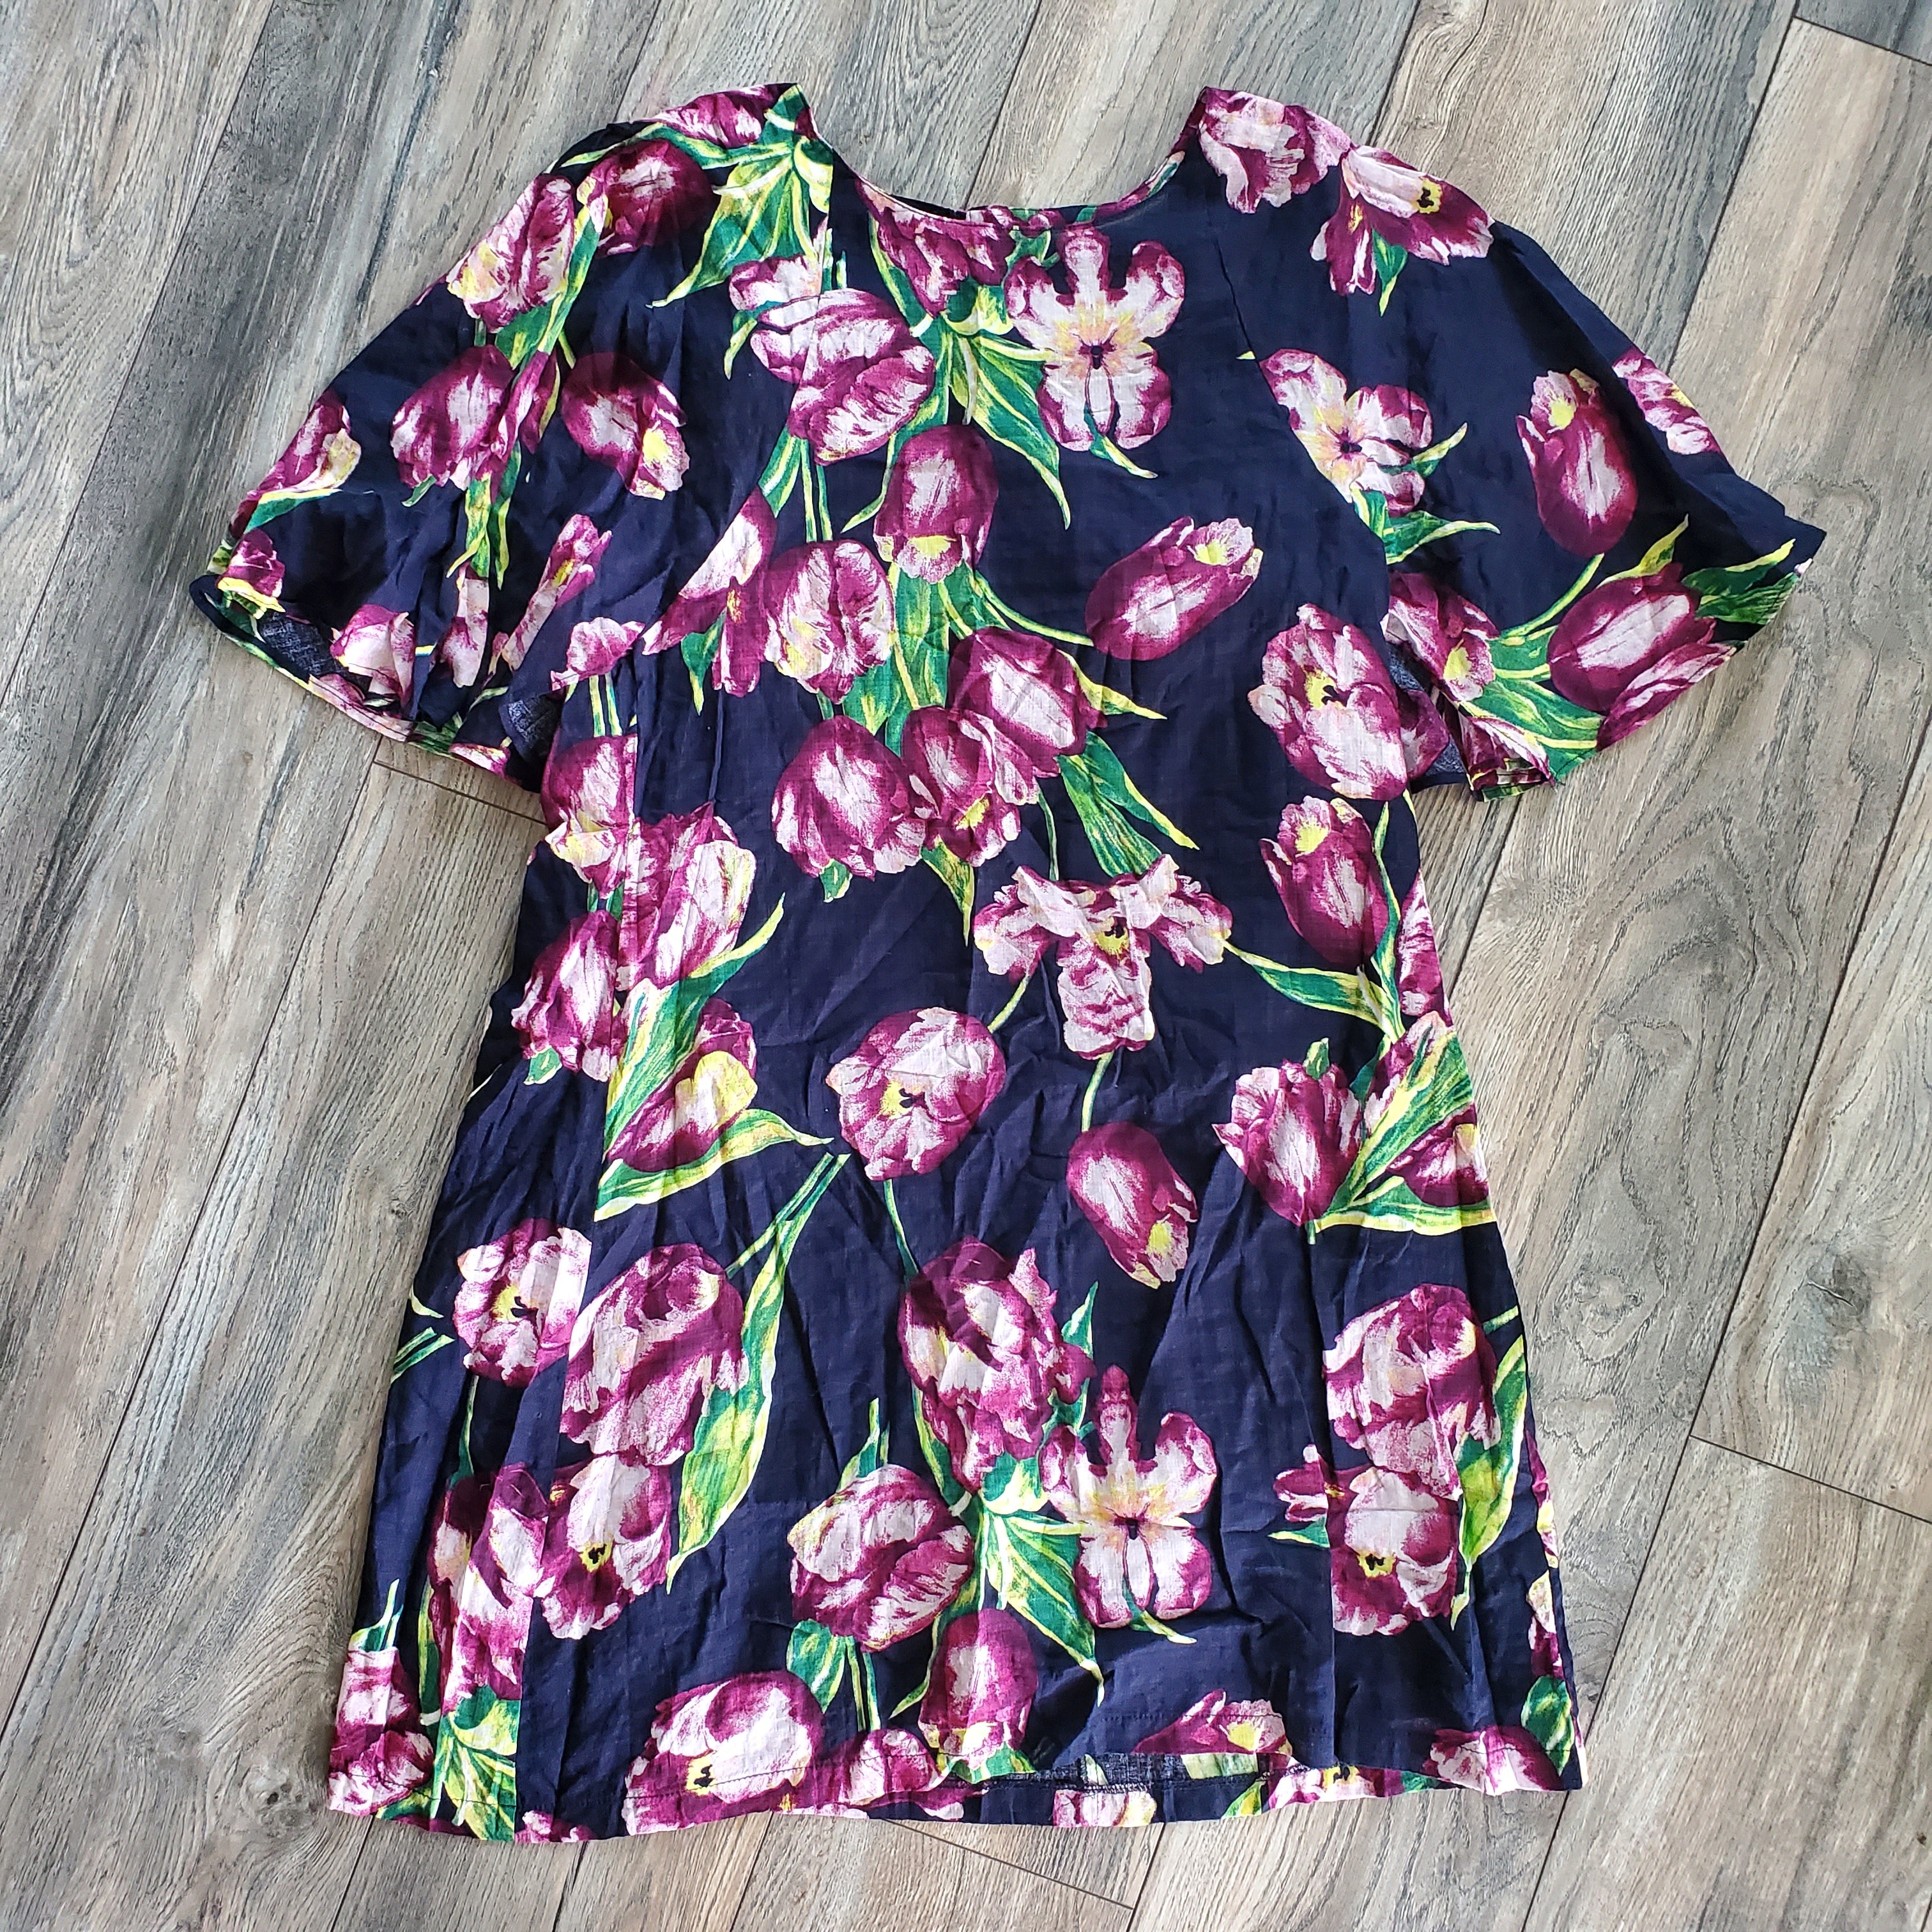 Flowing Sleeve Floral Dress (medium)